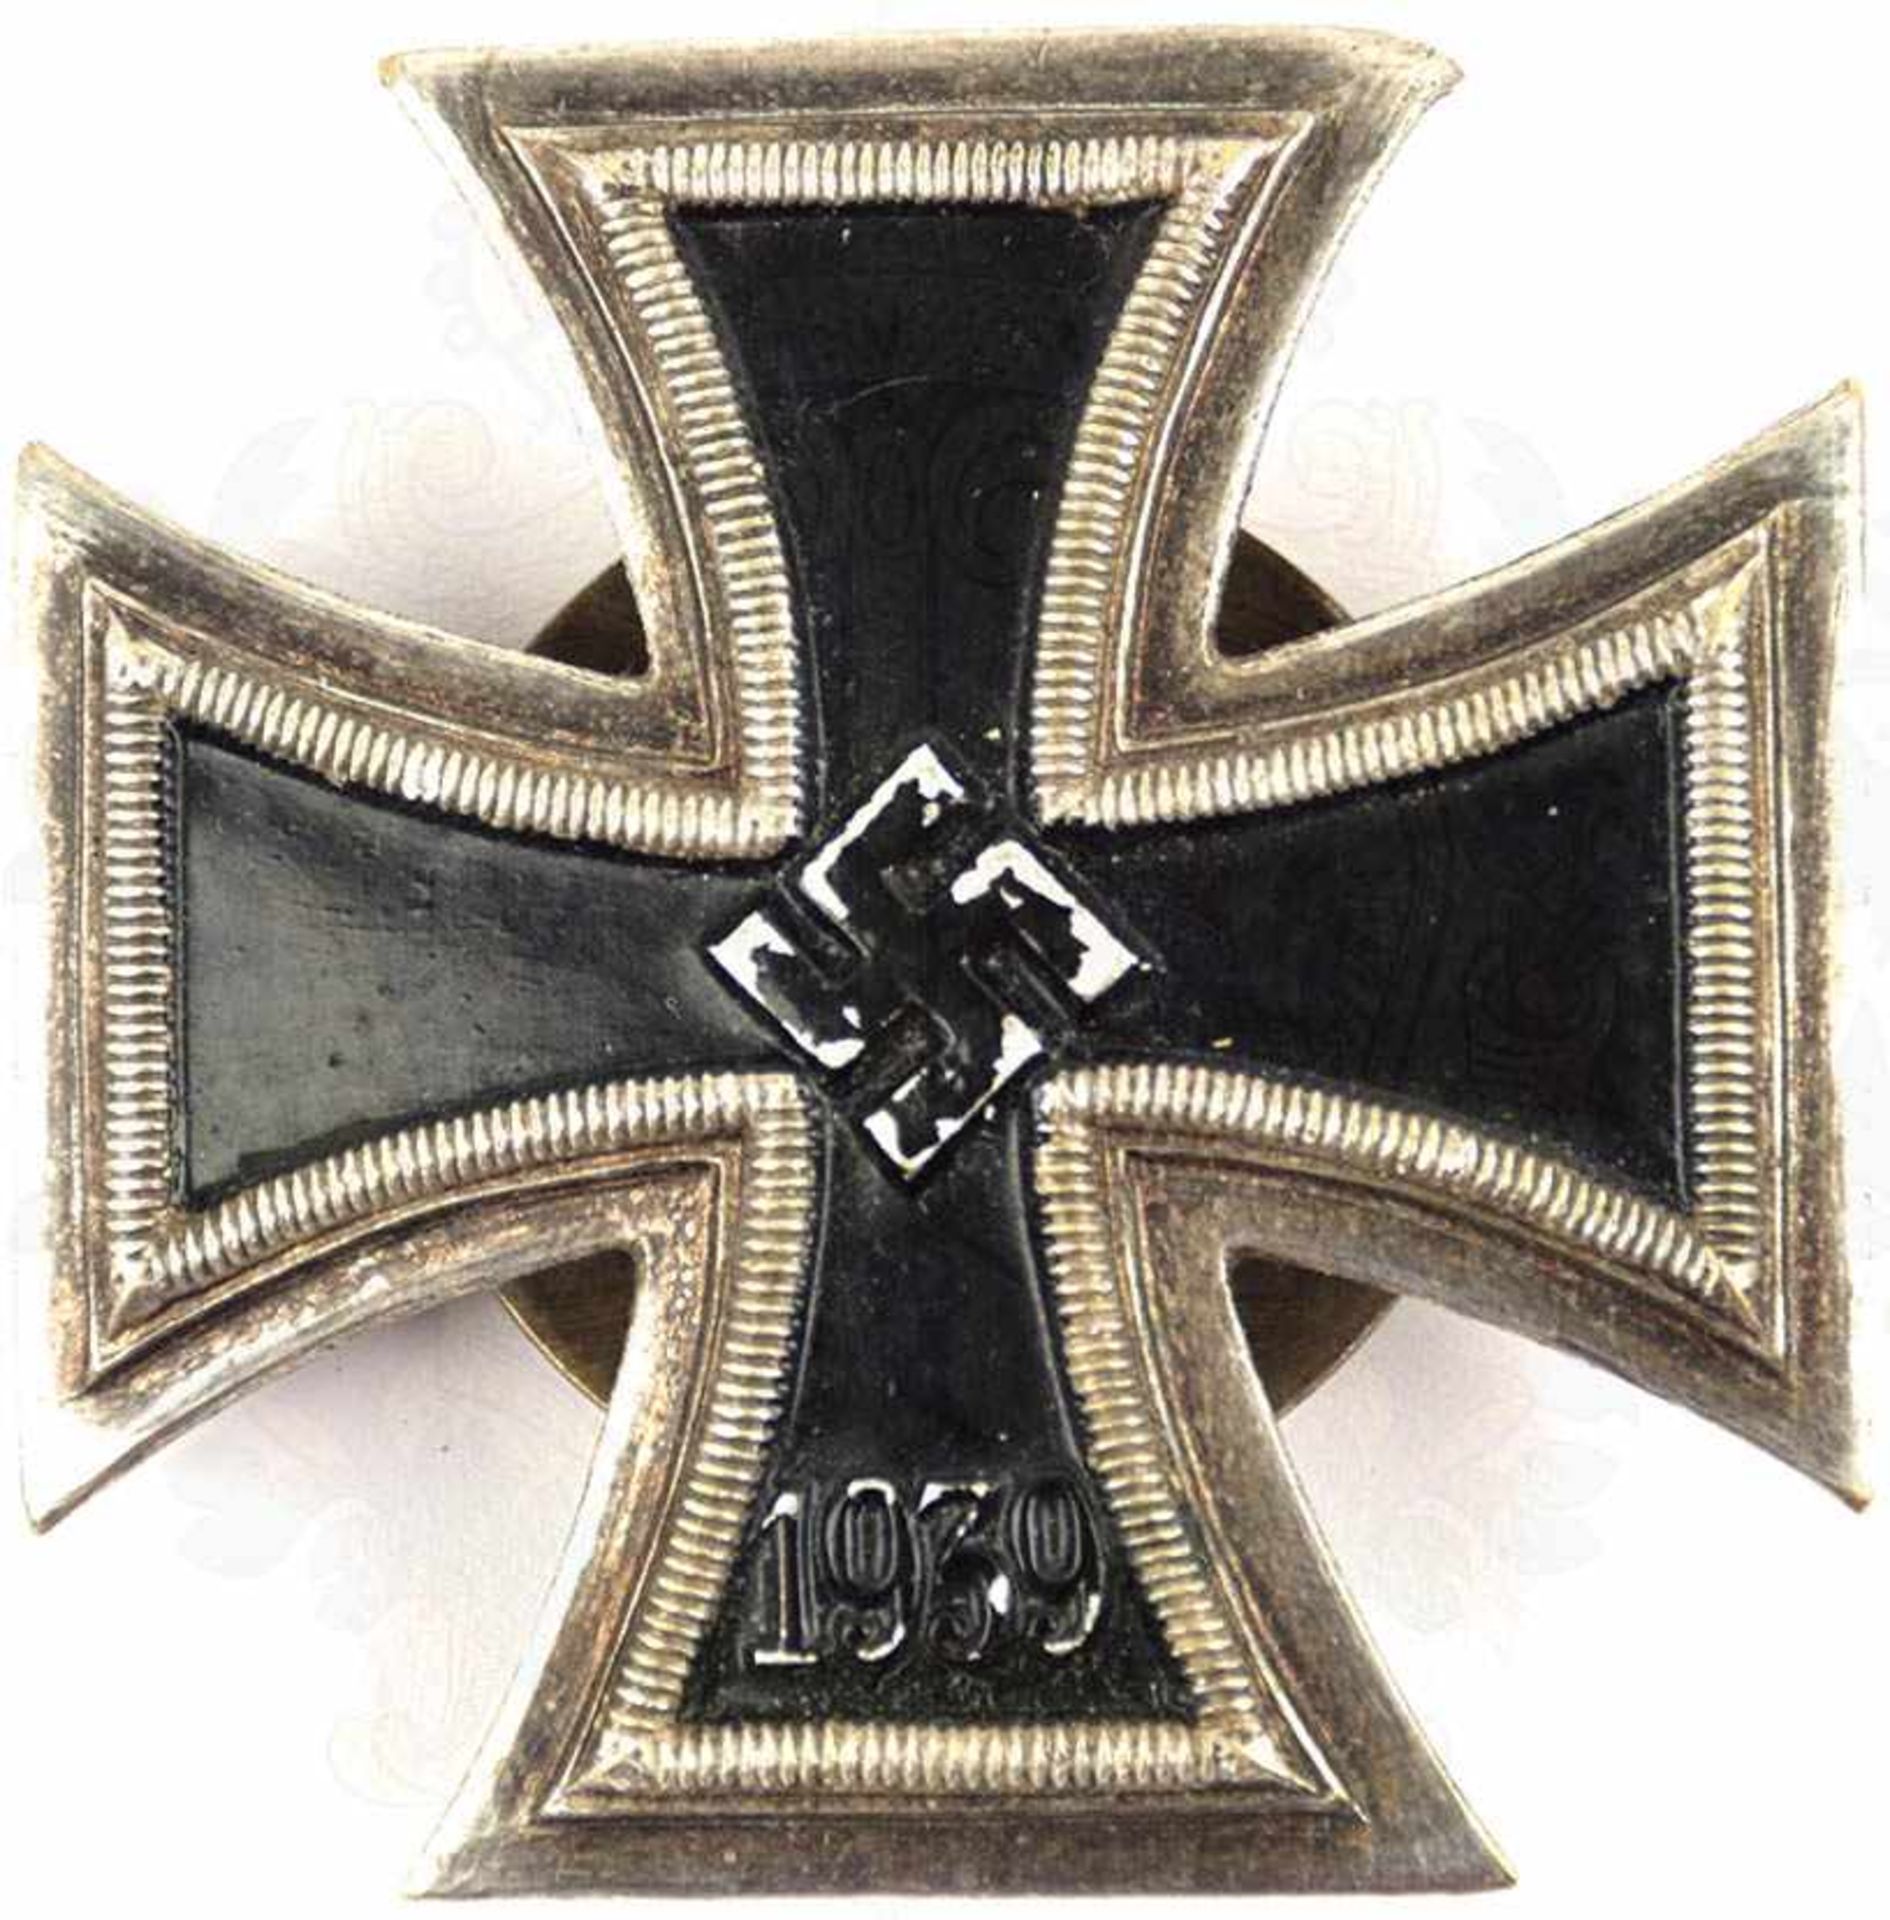 EK I 1939, einteilige Weißmetall-Fertigung, gewölbte Form, schwarz lackierter „Kern“, randhohes